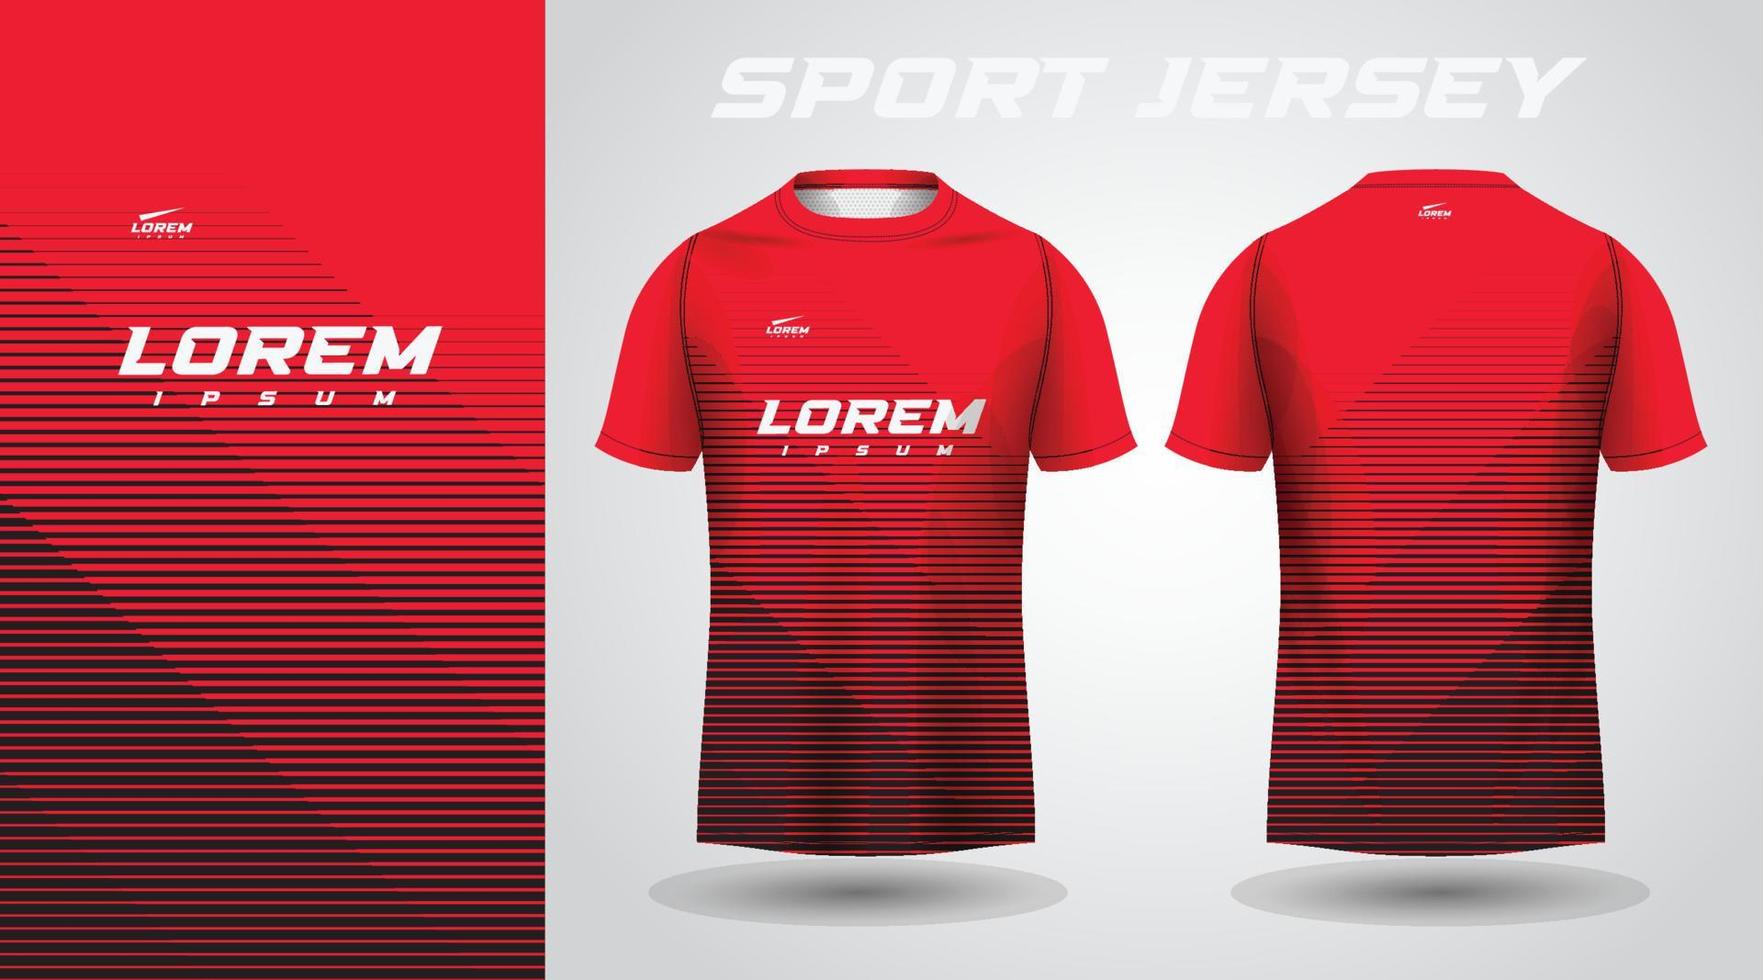 rood shirt sport jersey ontwerp vector